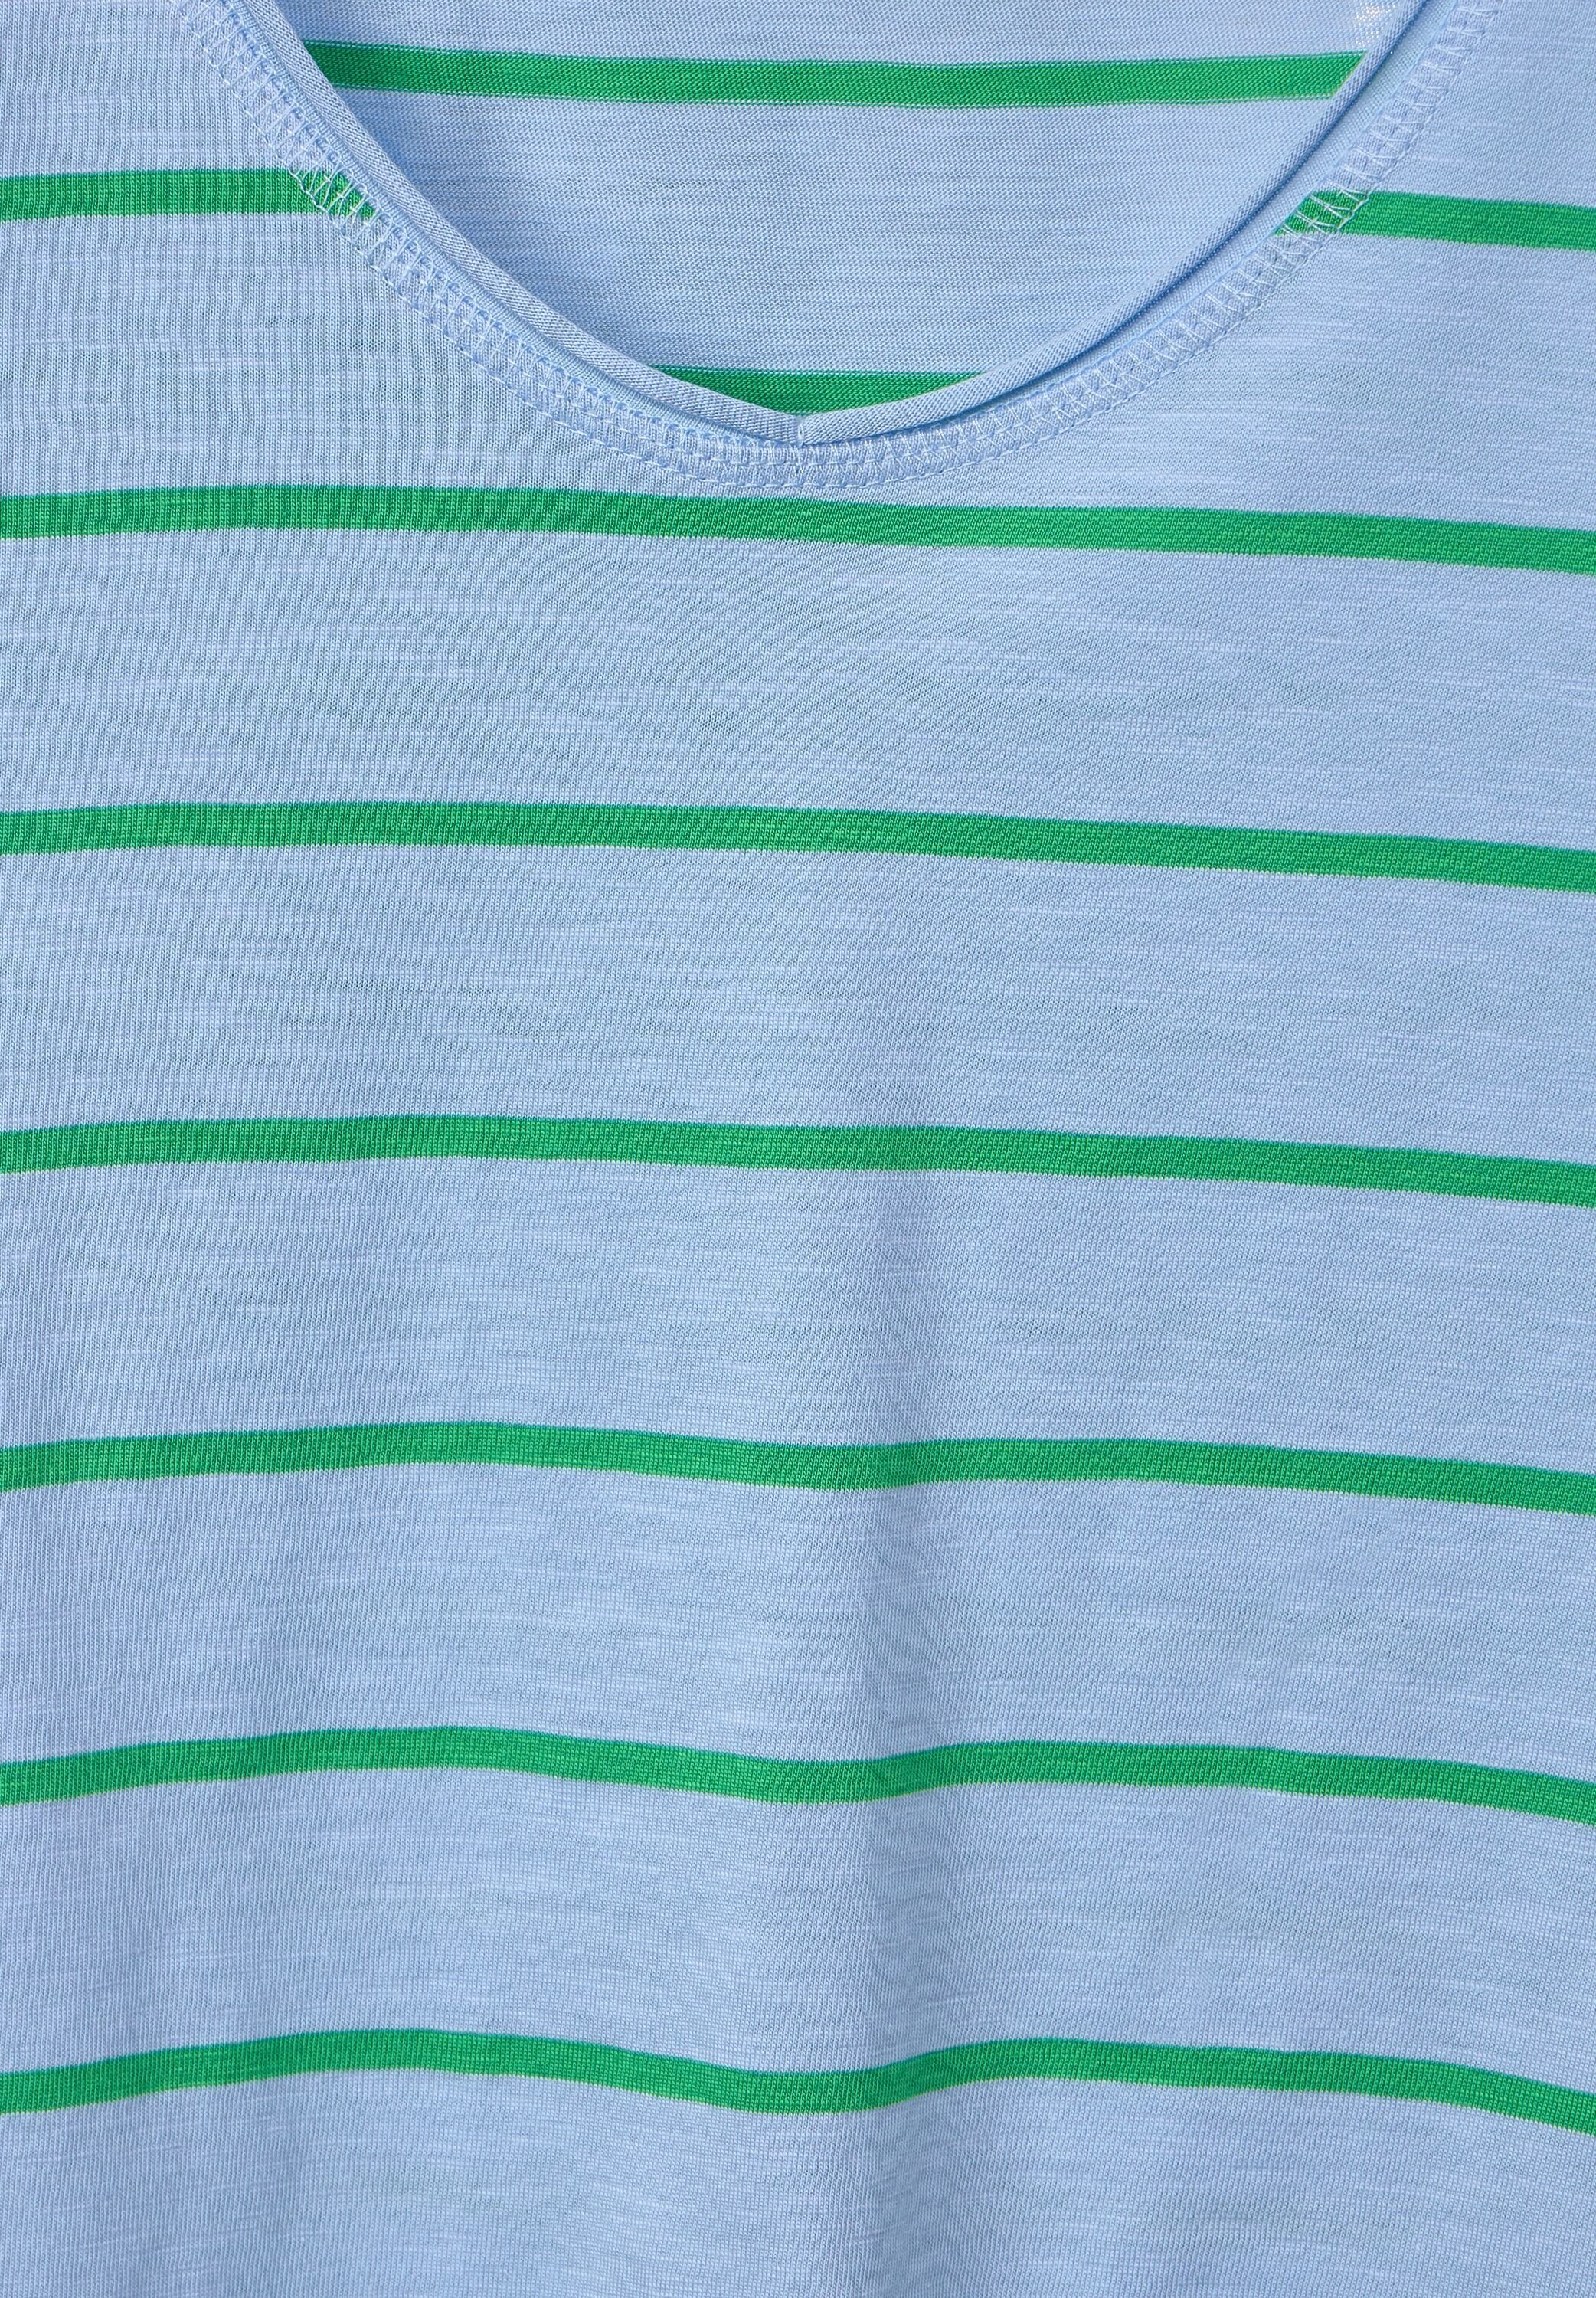 abgerundetem Cecil blue V-Ausschnitt fresh und green mit T-Shirt tranquil